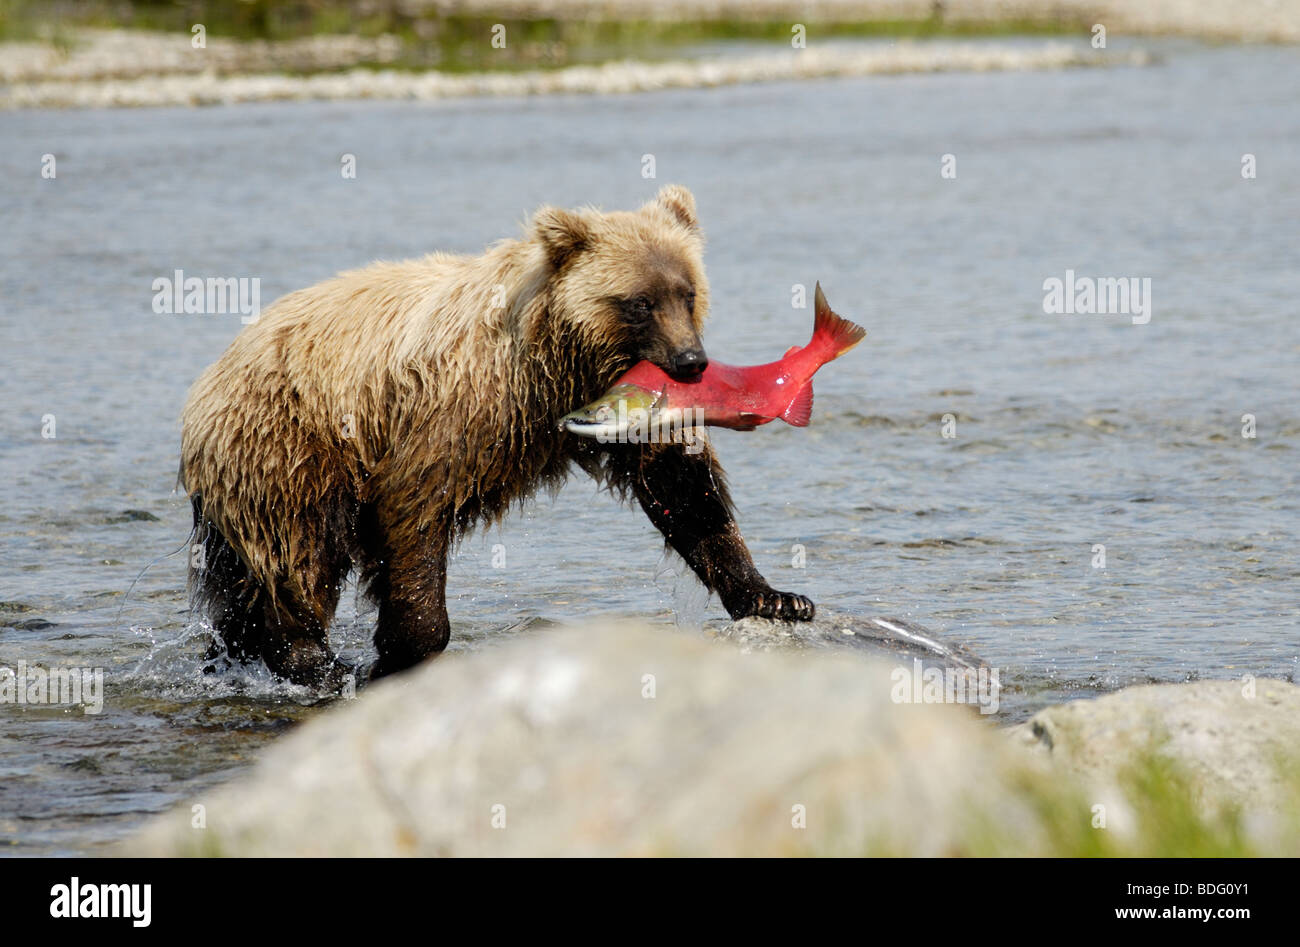 Grizzly Bear con pescado (salmón) en boca, Ursus arctos horribilis, Parque Nacional Katmai, Alaska Foto de stock